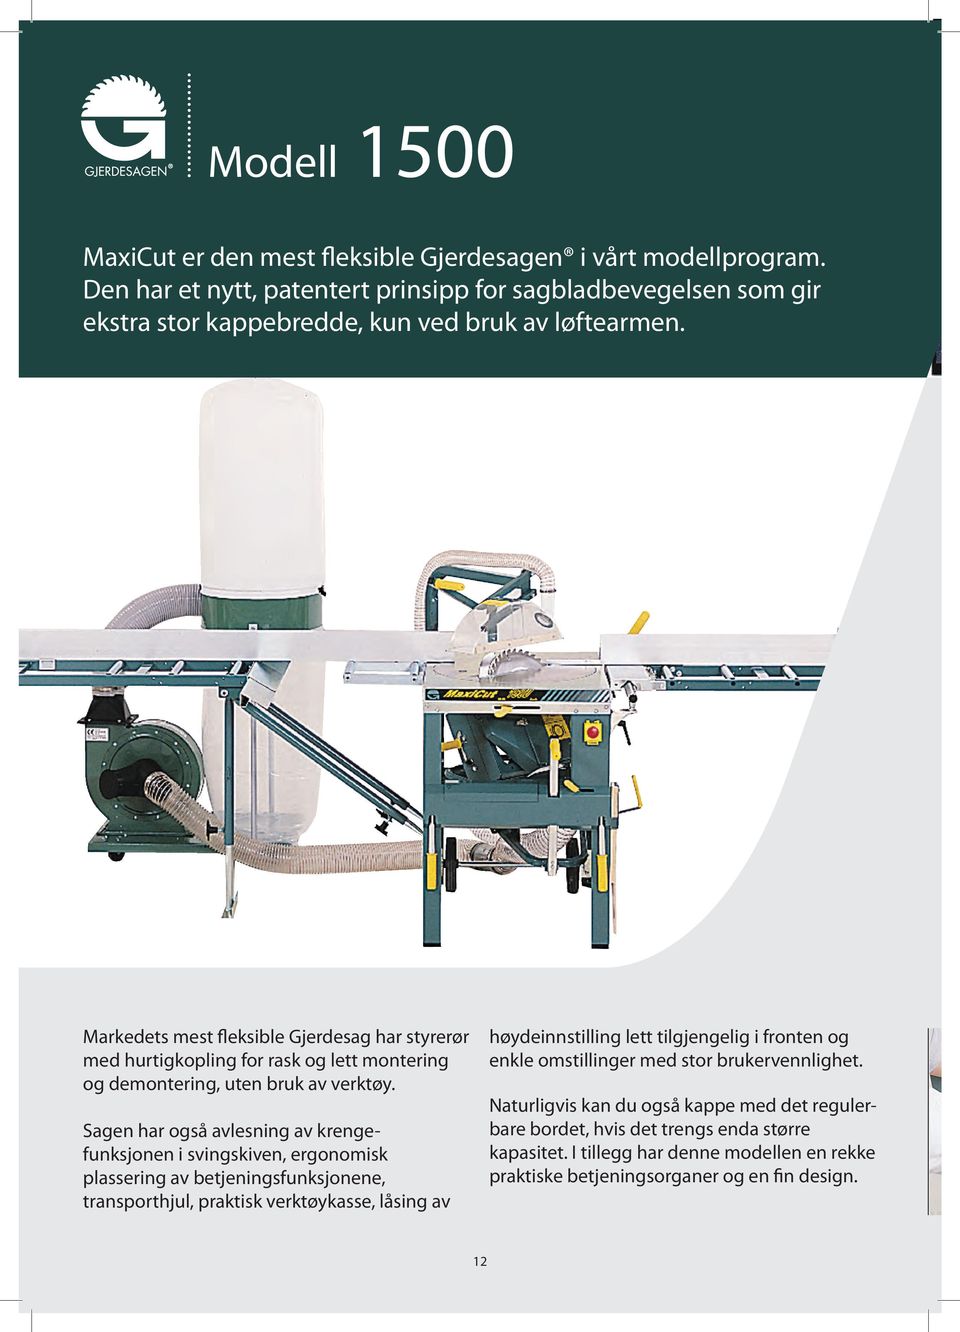 Markedets mest fleksible Gjerdesag har styrerør med hurtigkopling for rask og lett montering og demontering, uten bruk av verktøy.